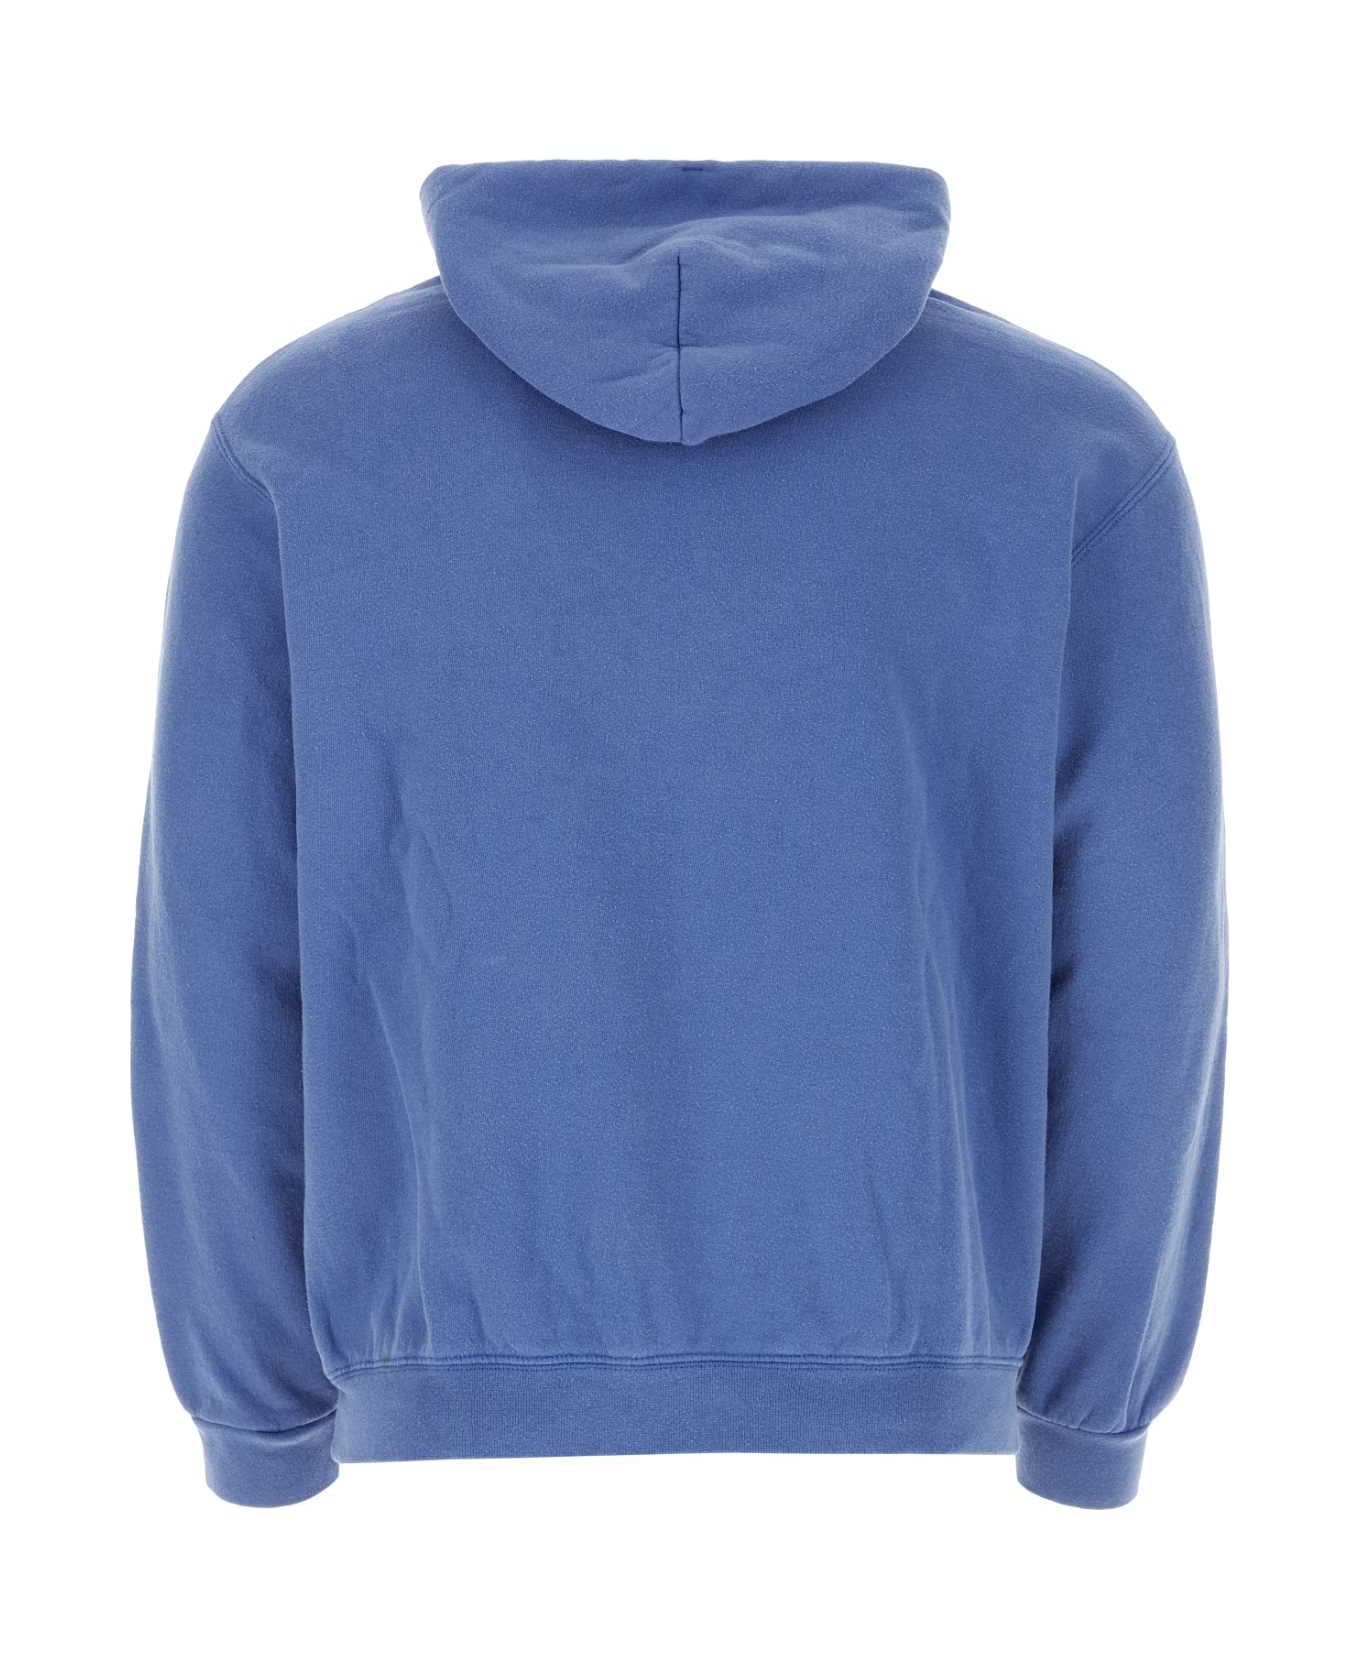 Wild Donkey Melange Blue Cotton Sweatshirt - SWROYA